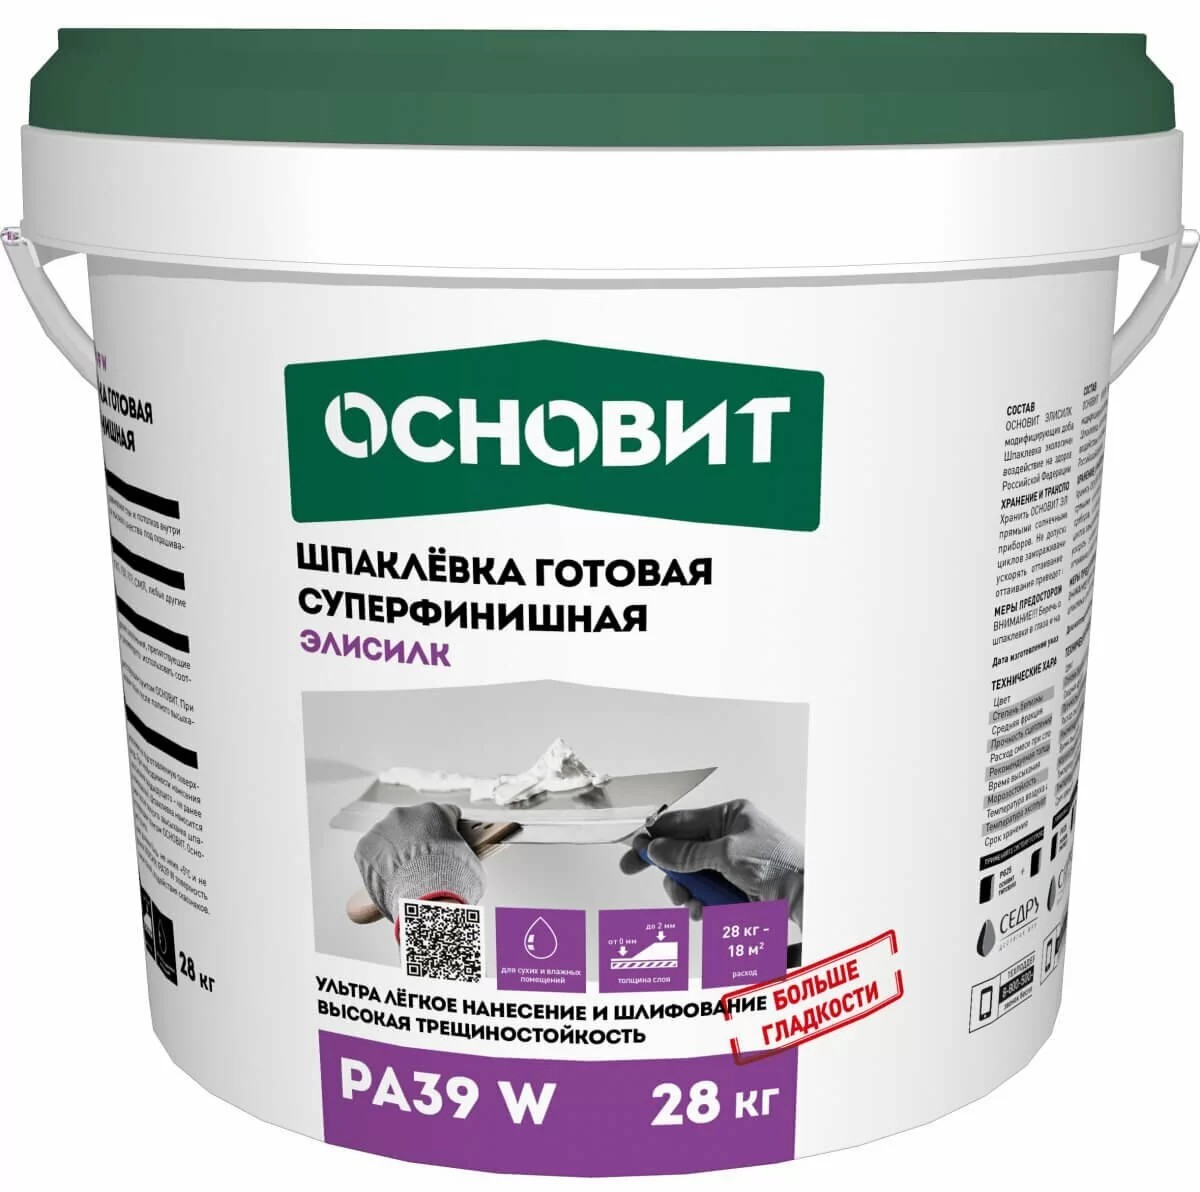 Шпаклевка готовая суперфинишная ОСНОВИТ Элисилк PA39 W 28 кг от магазина ЛесКонПром.ру